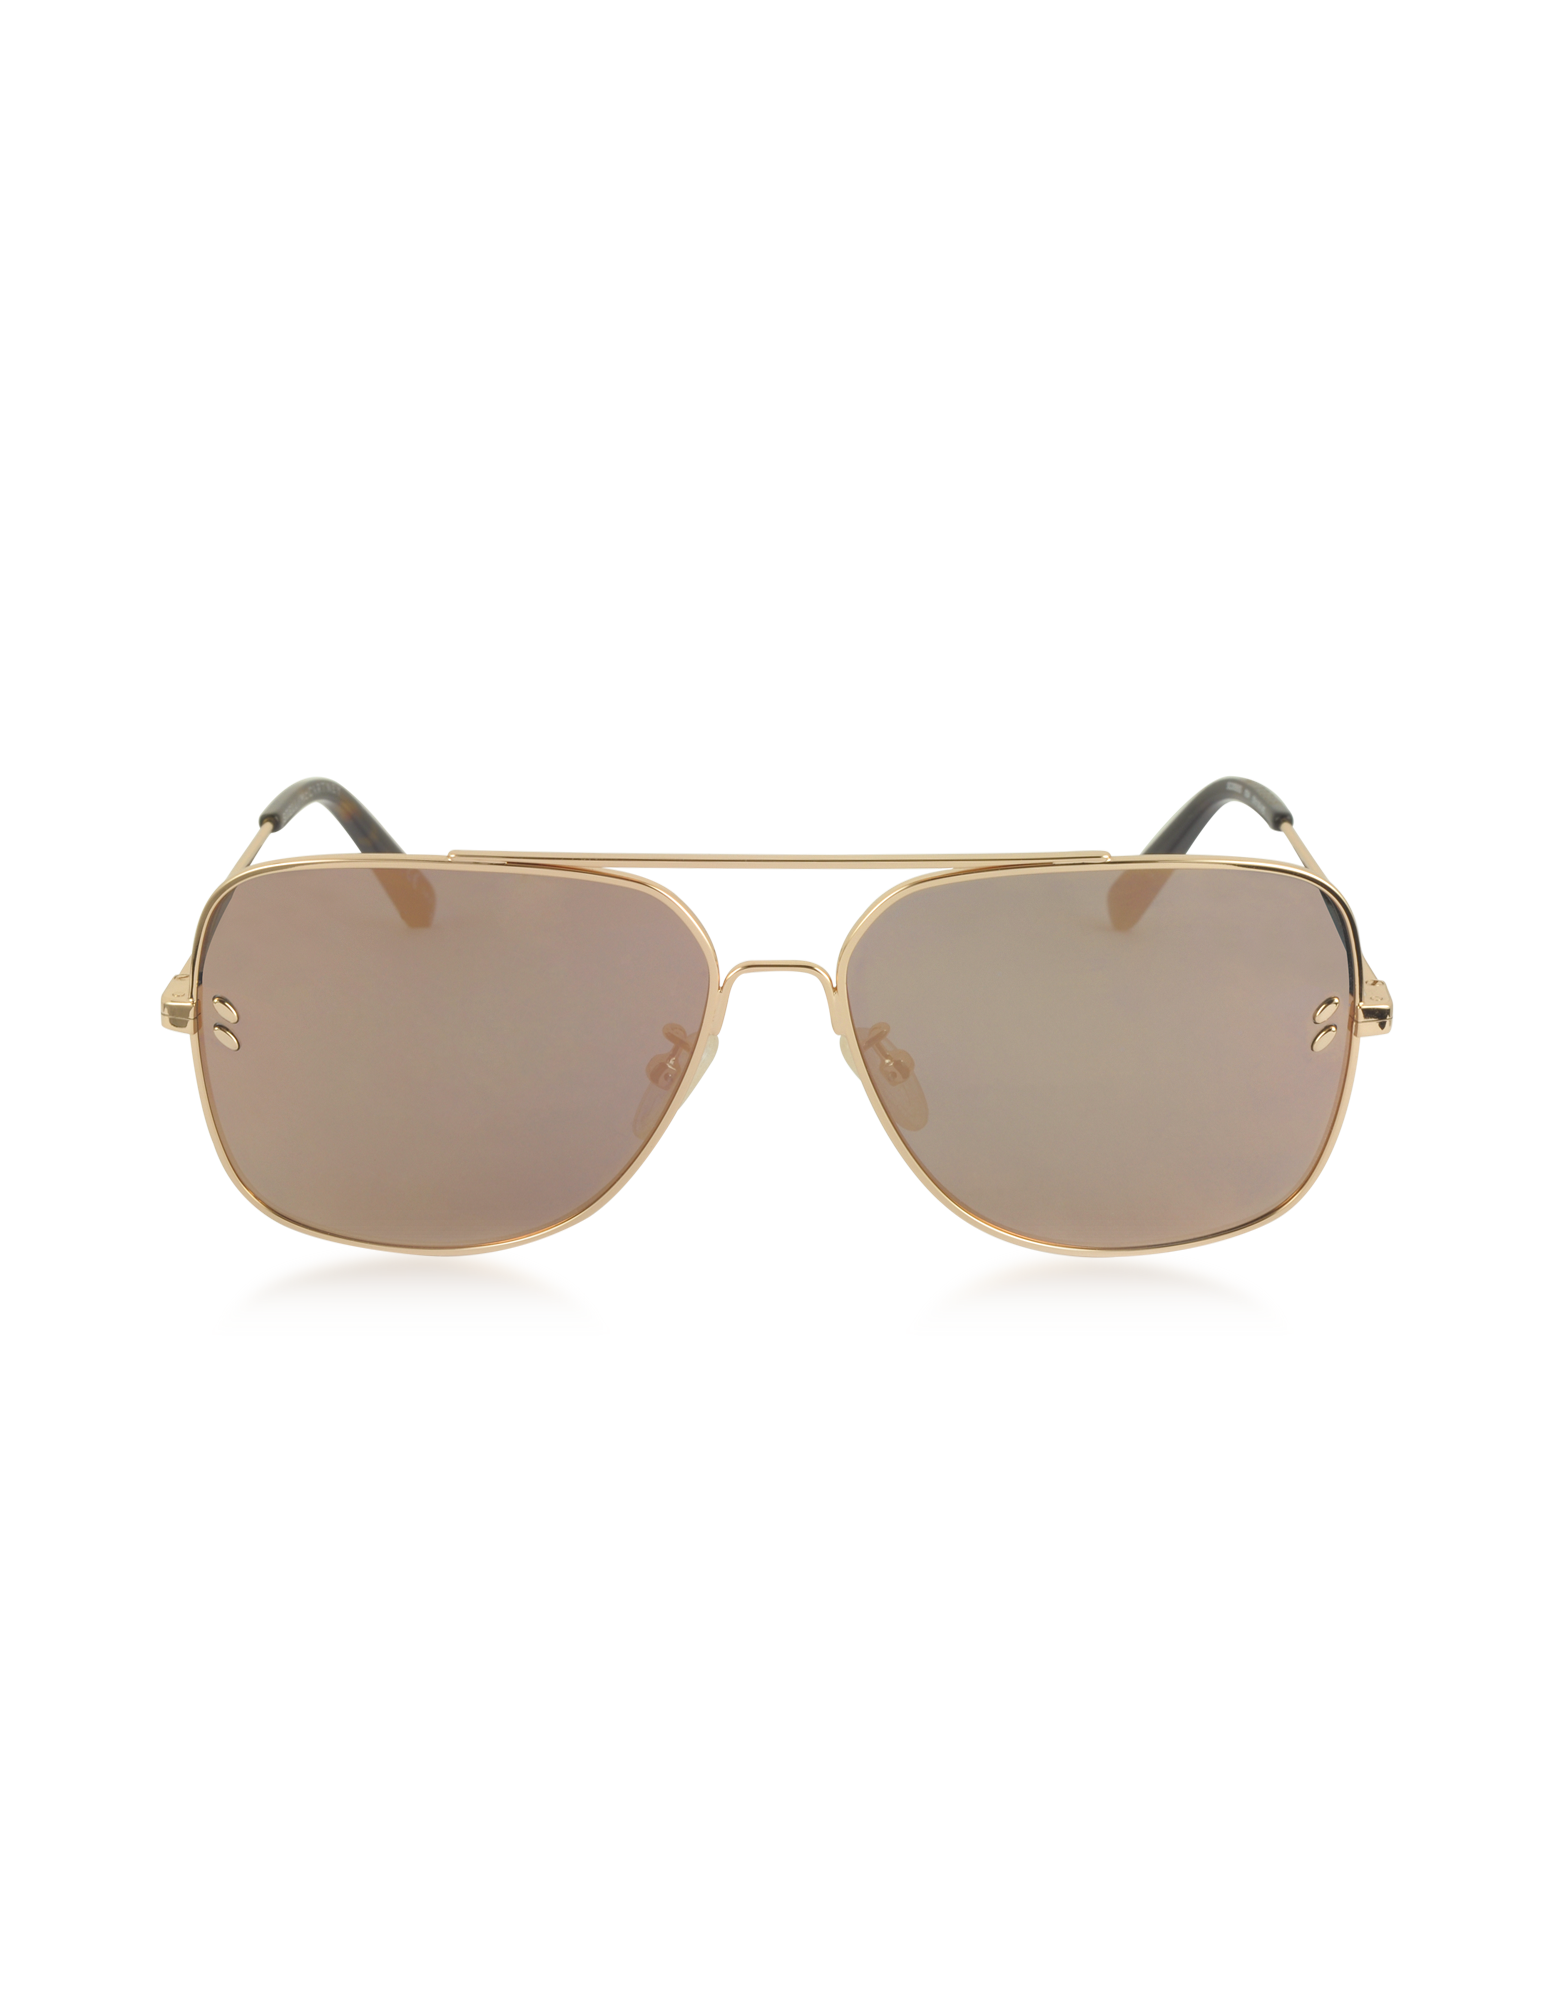 Designer Sunglasses 2018 - FORZIERI